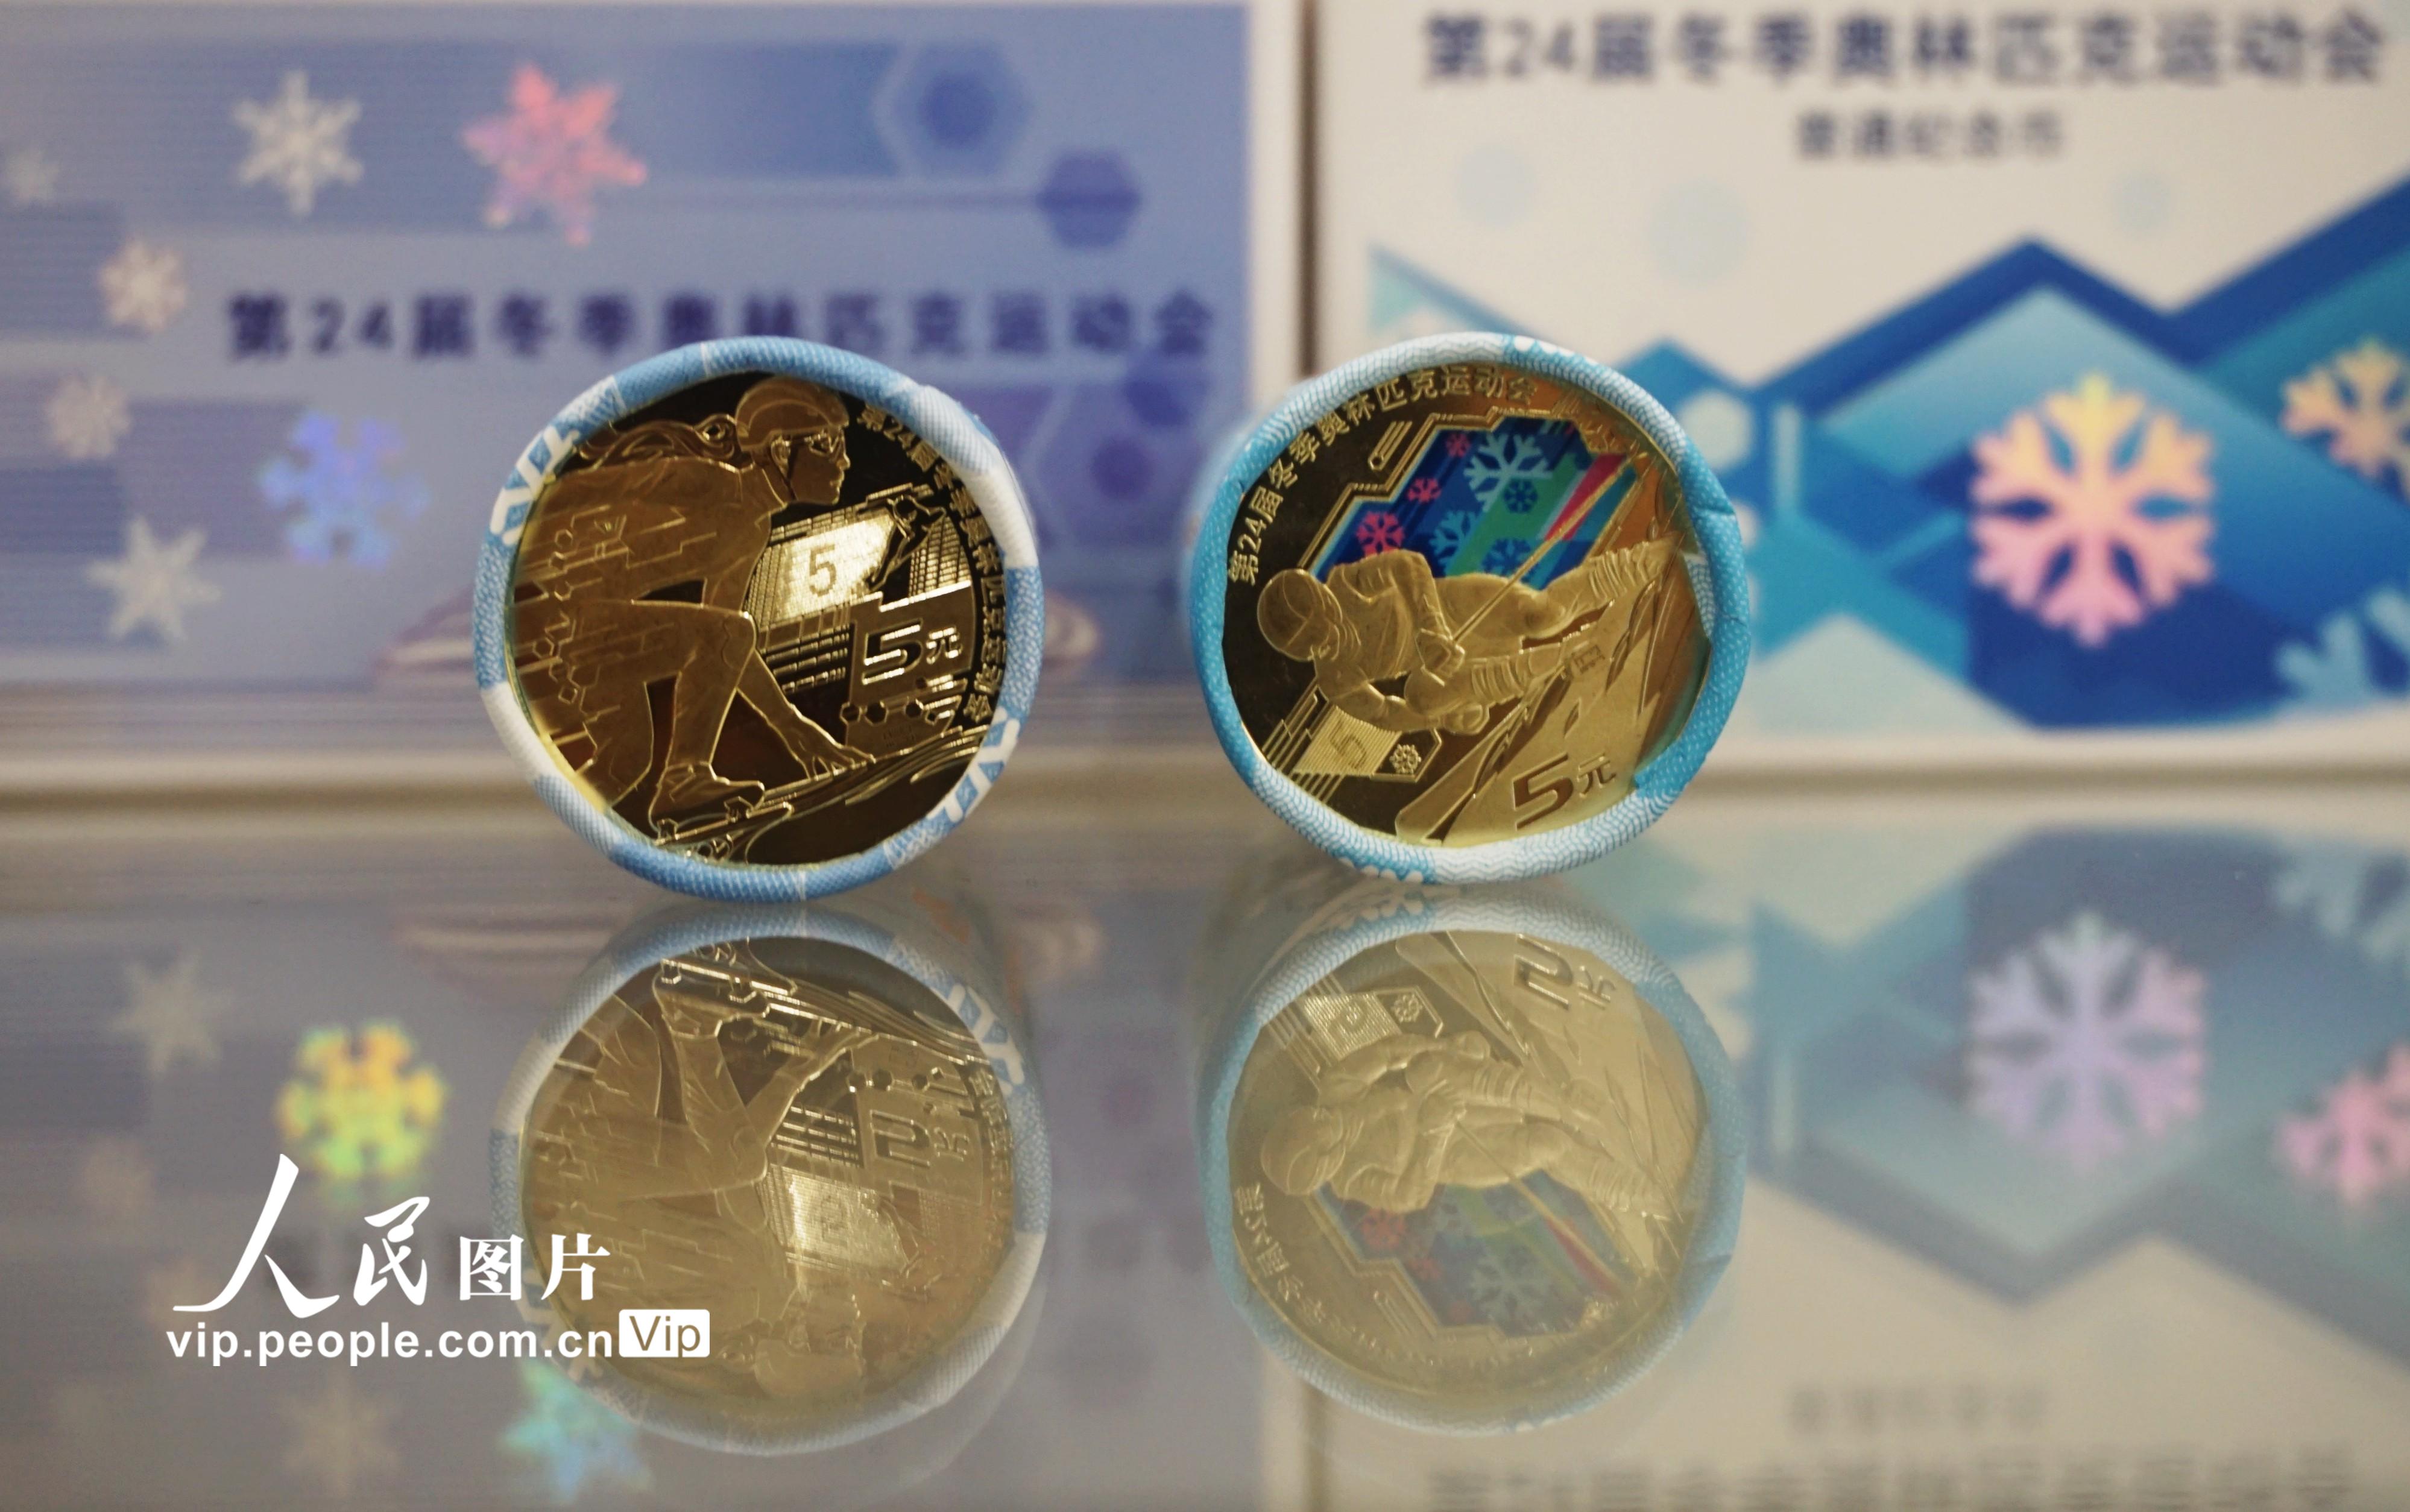 北京冬奧會普通紀念幣正式發行【2】